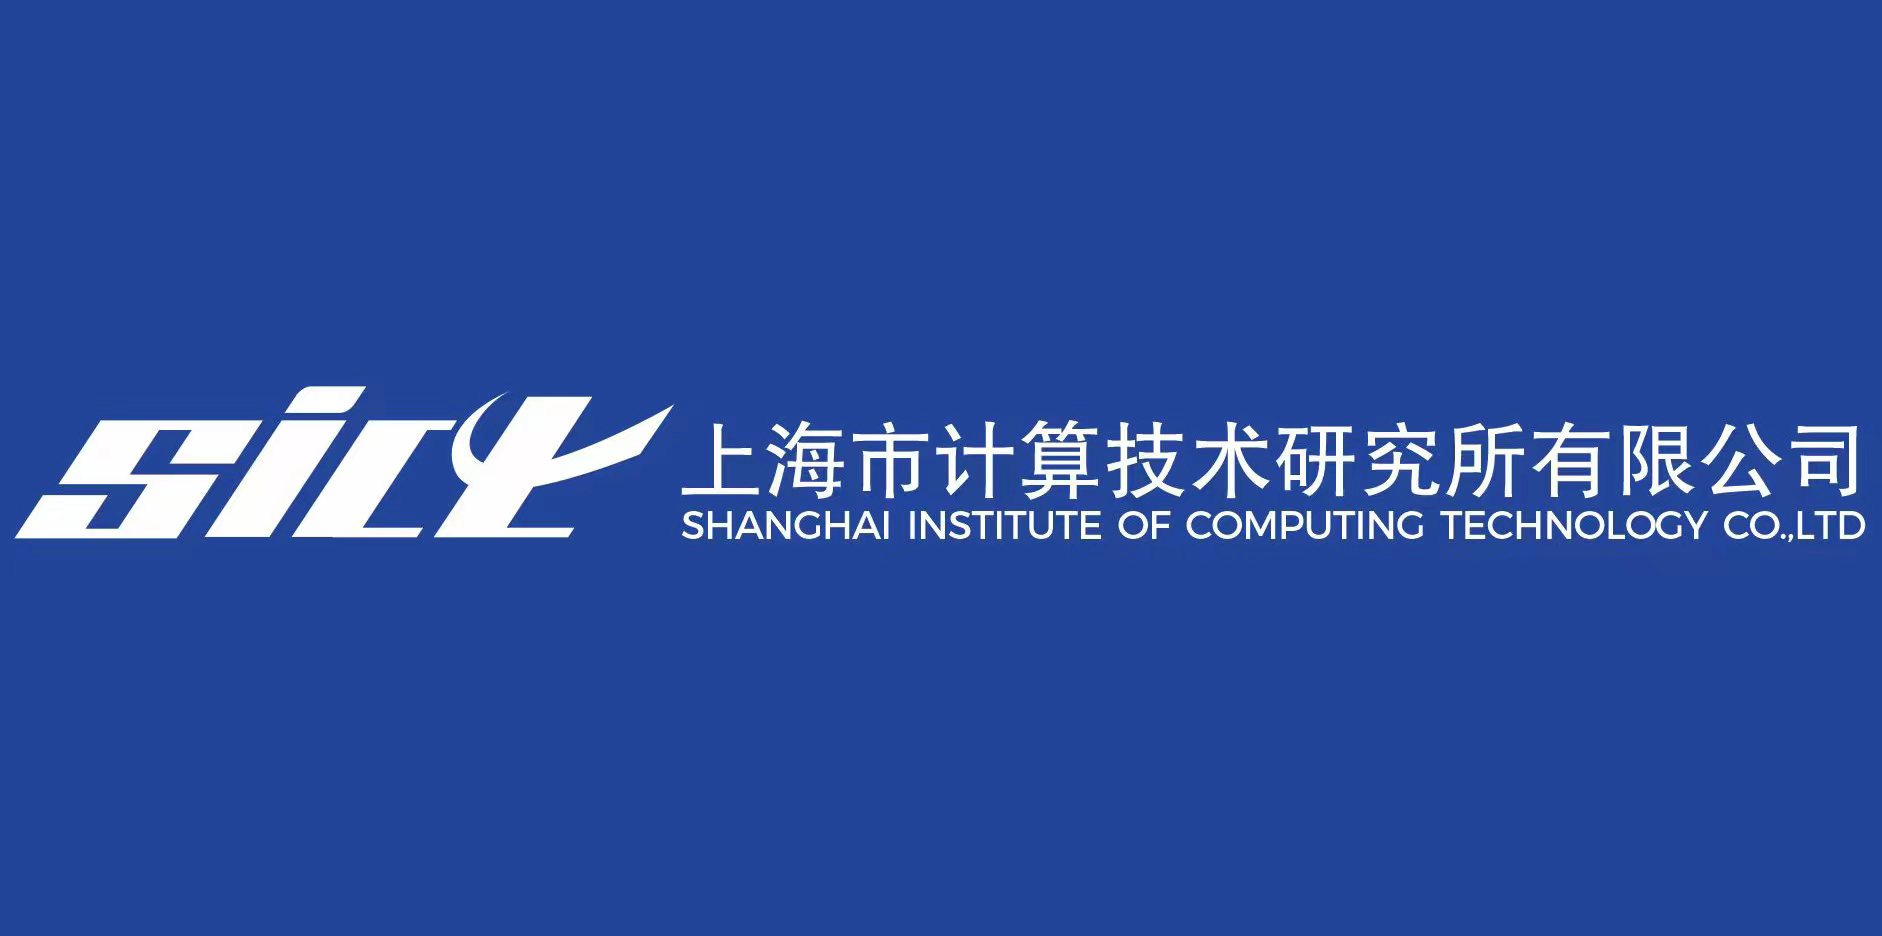 上海市计算技术研究所有限公司启用公司新标识